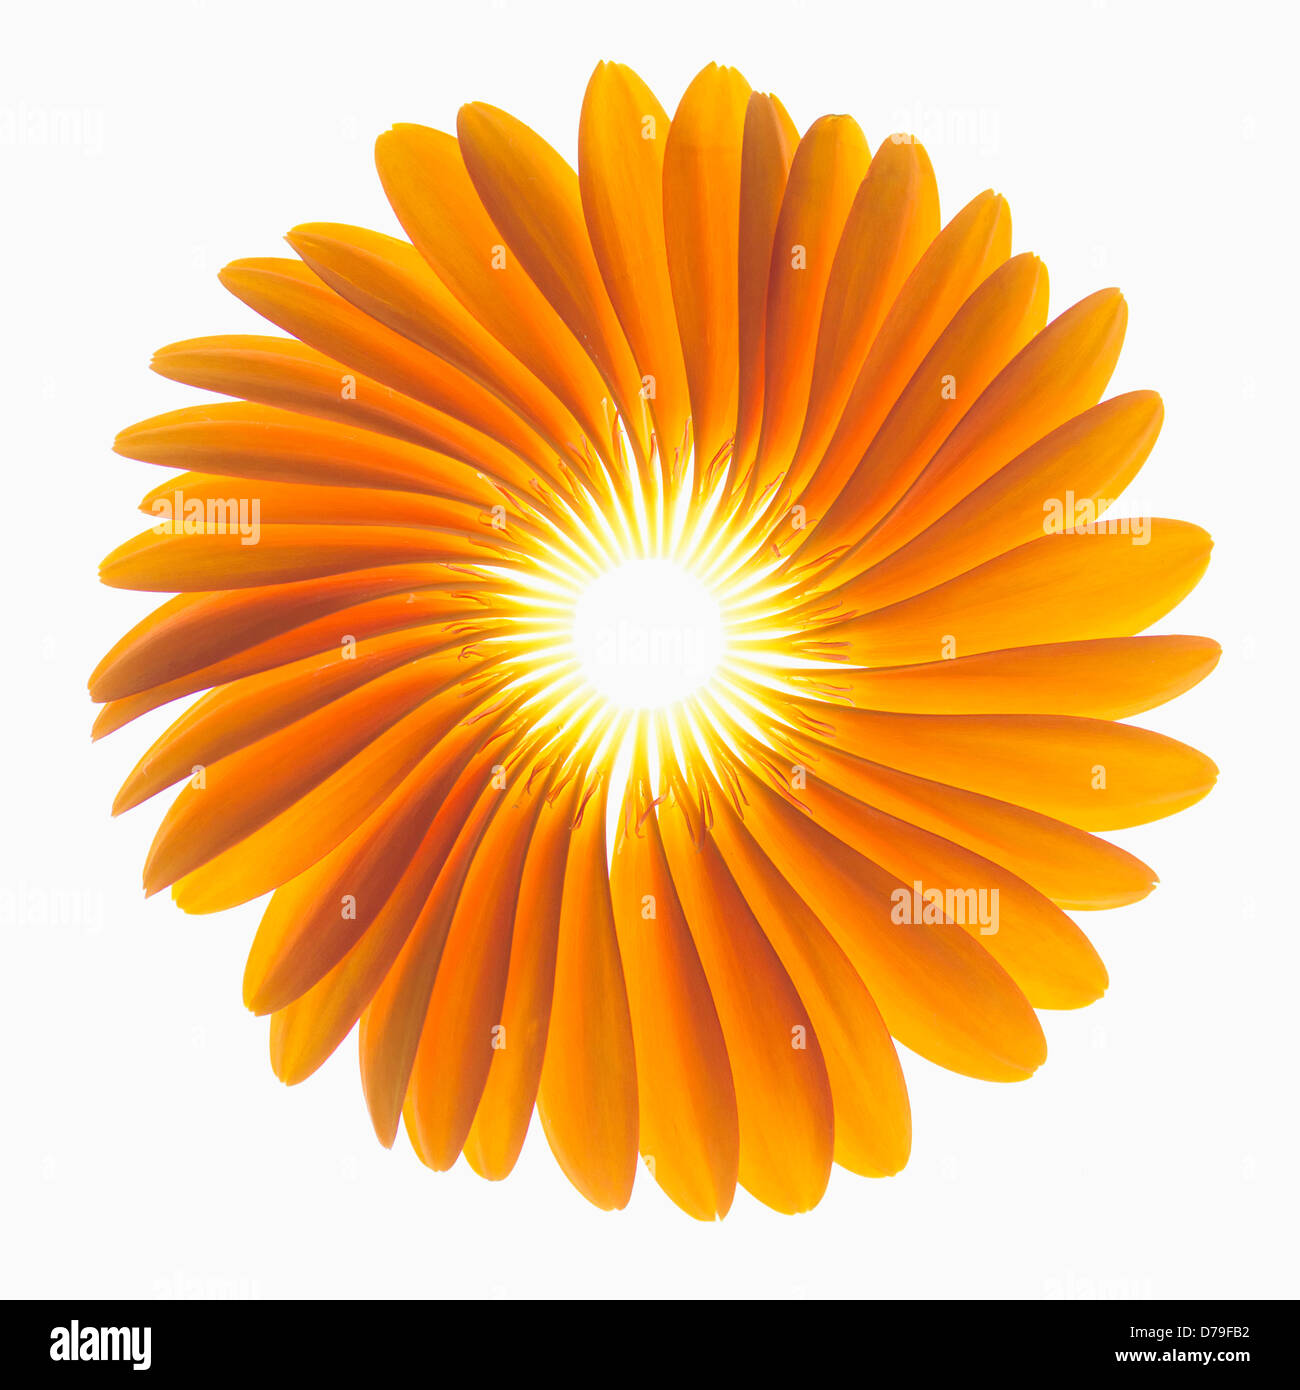 Gerbera jamesonii 'Optima', Fan de pétales orange placé délicatement pour former un représentant la forme d'une fleur de Gerbera. Banque D'Images